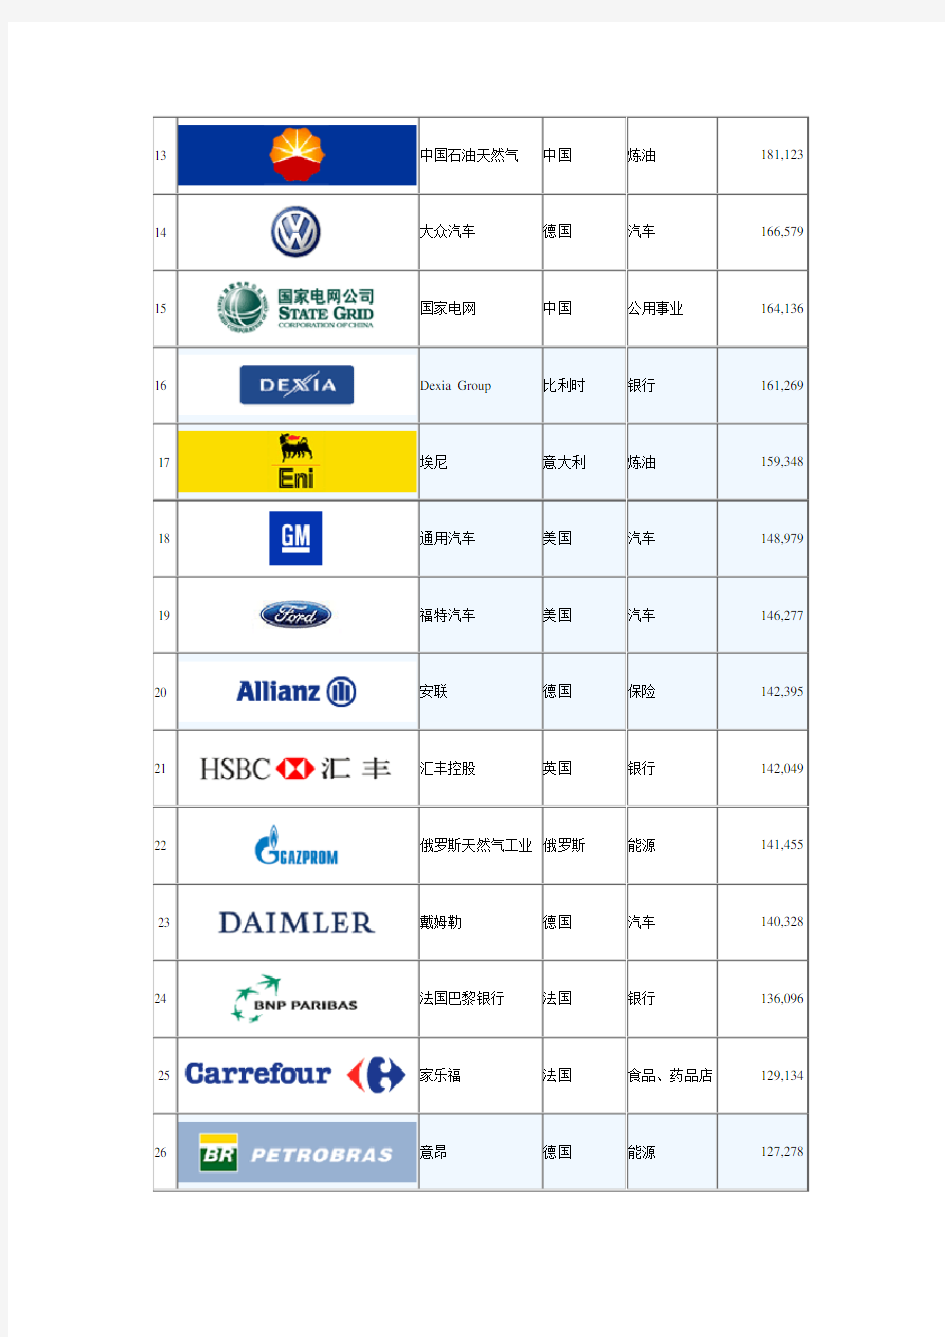 世界500强公司名单(LOGO)